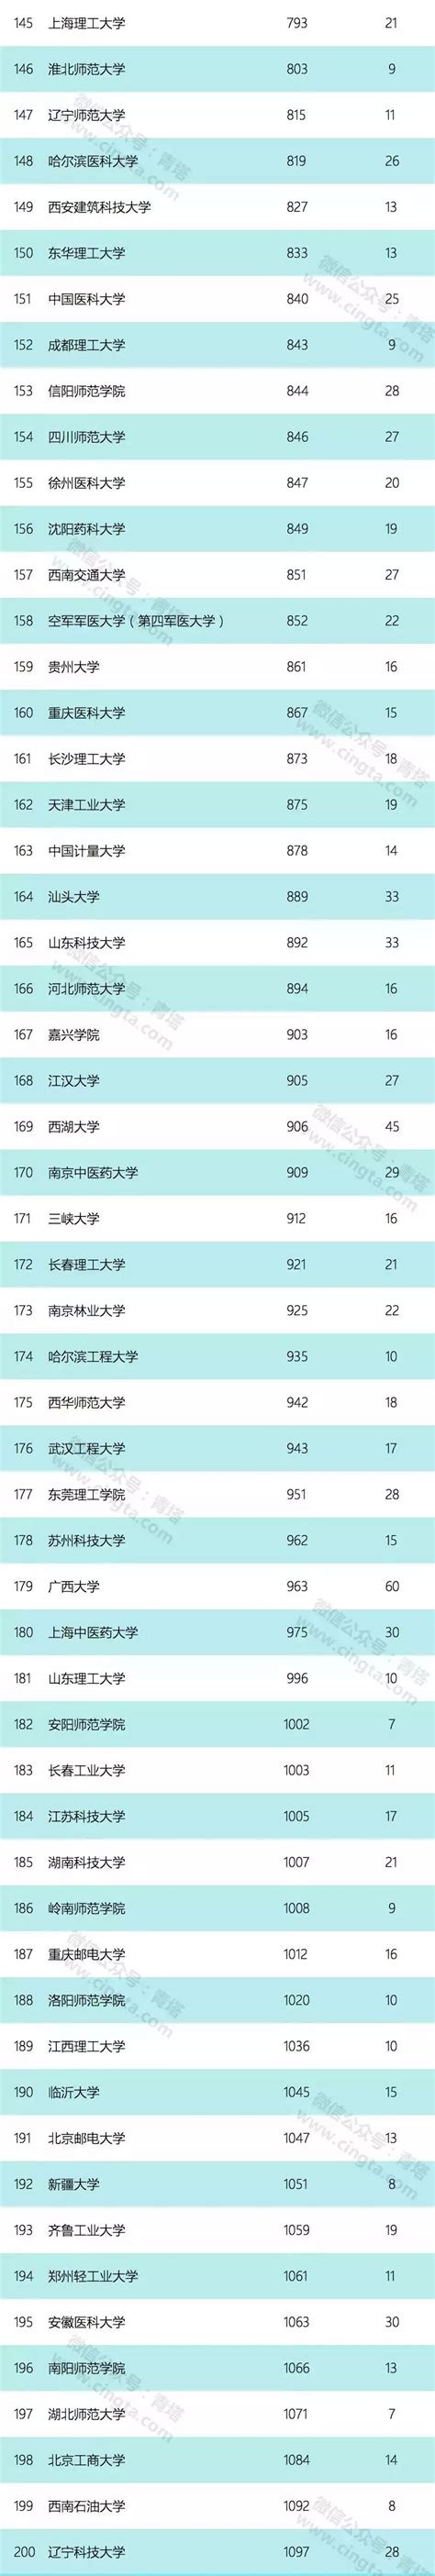 中国科学技术大学 2018年最新自然指数更新 中国科大上升至全球高校第18位